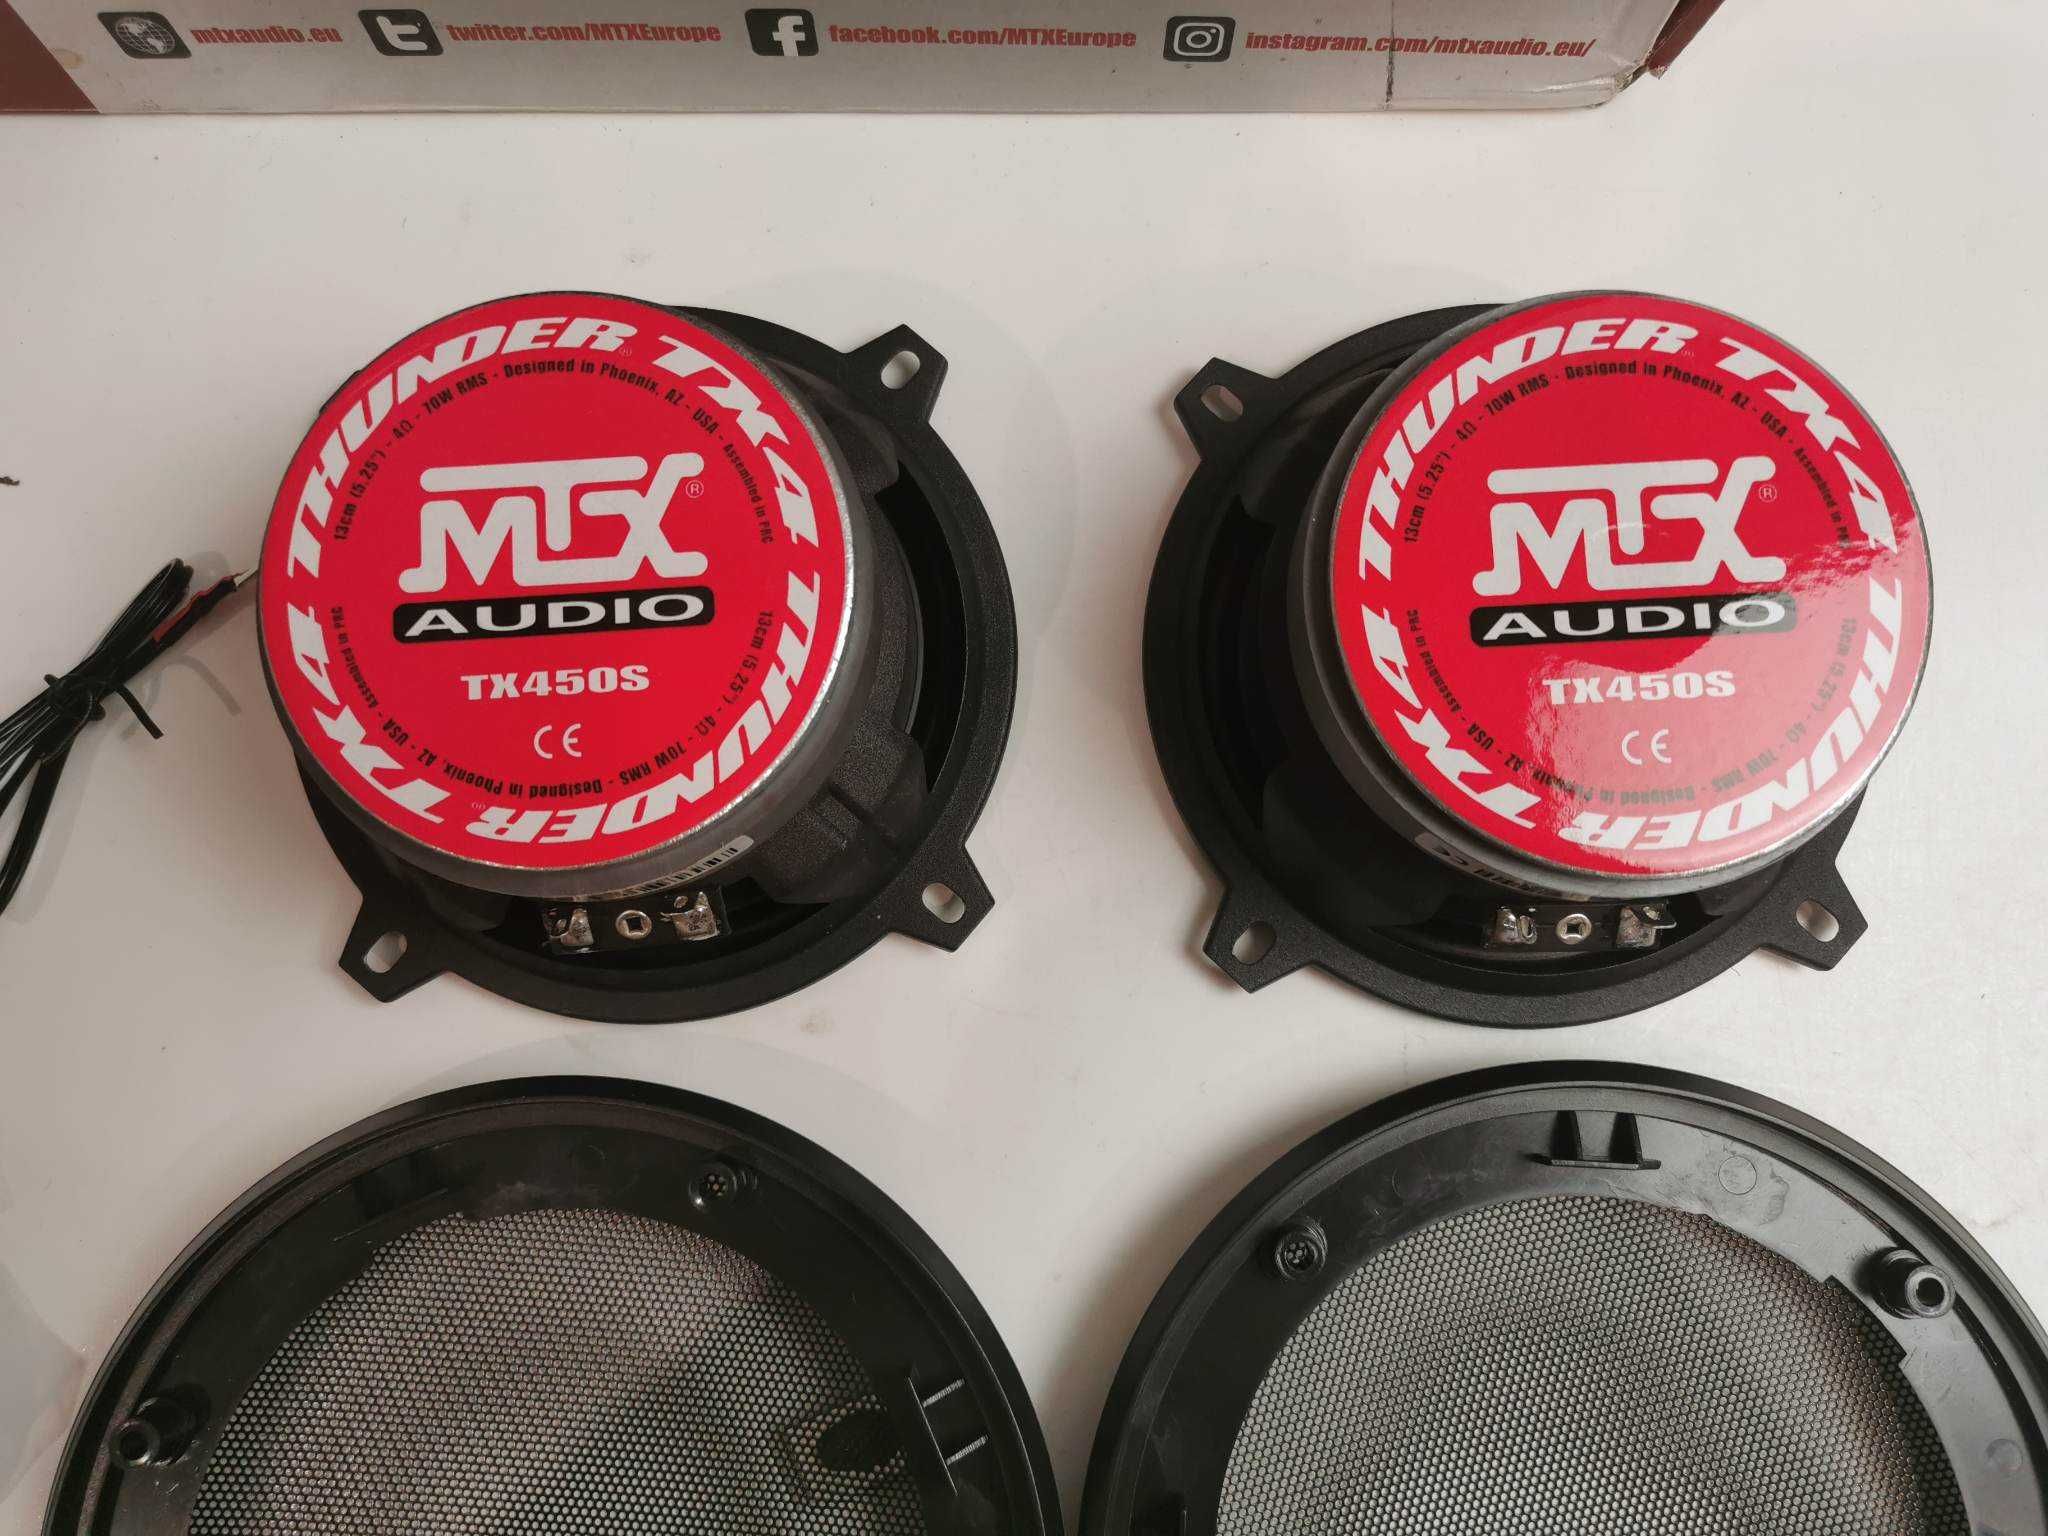 Głośniki  2-drożne samoc MTX TX450S - 13 cm - 70 W